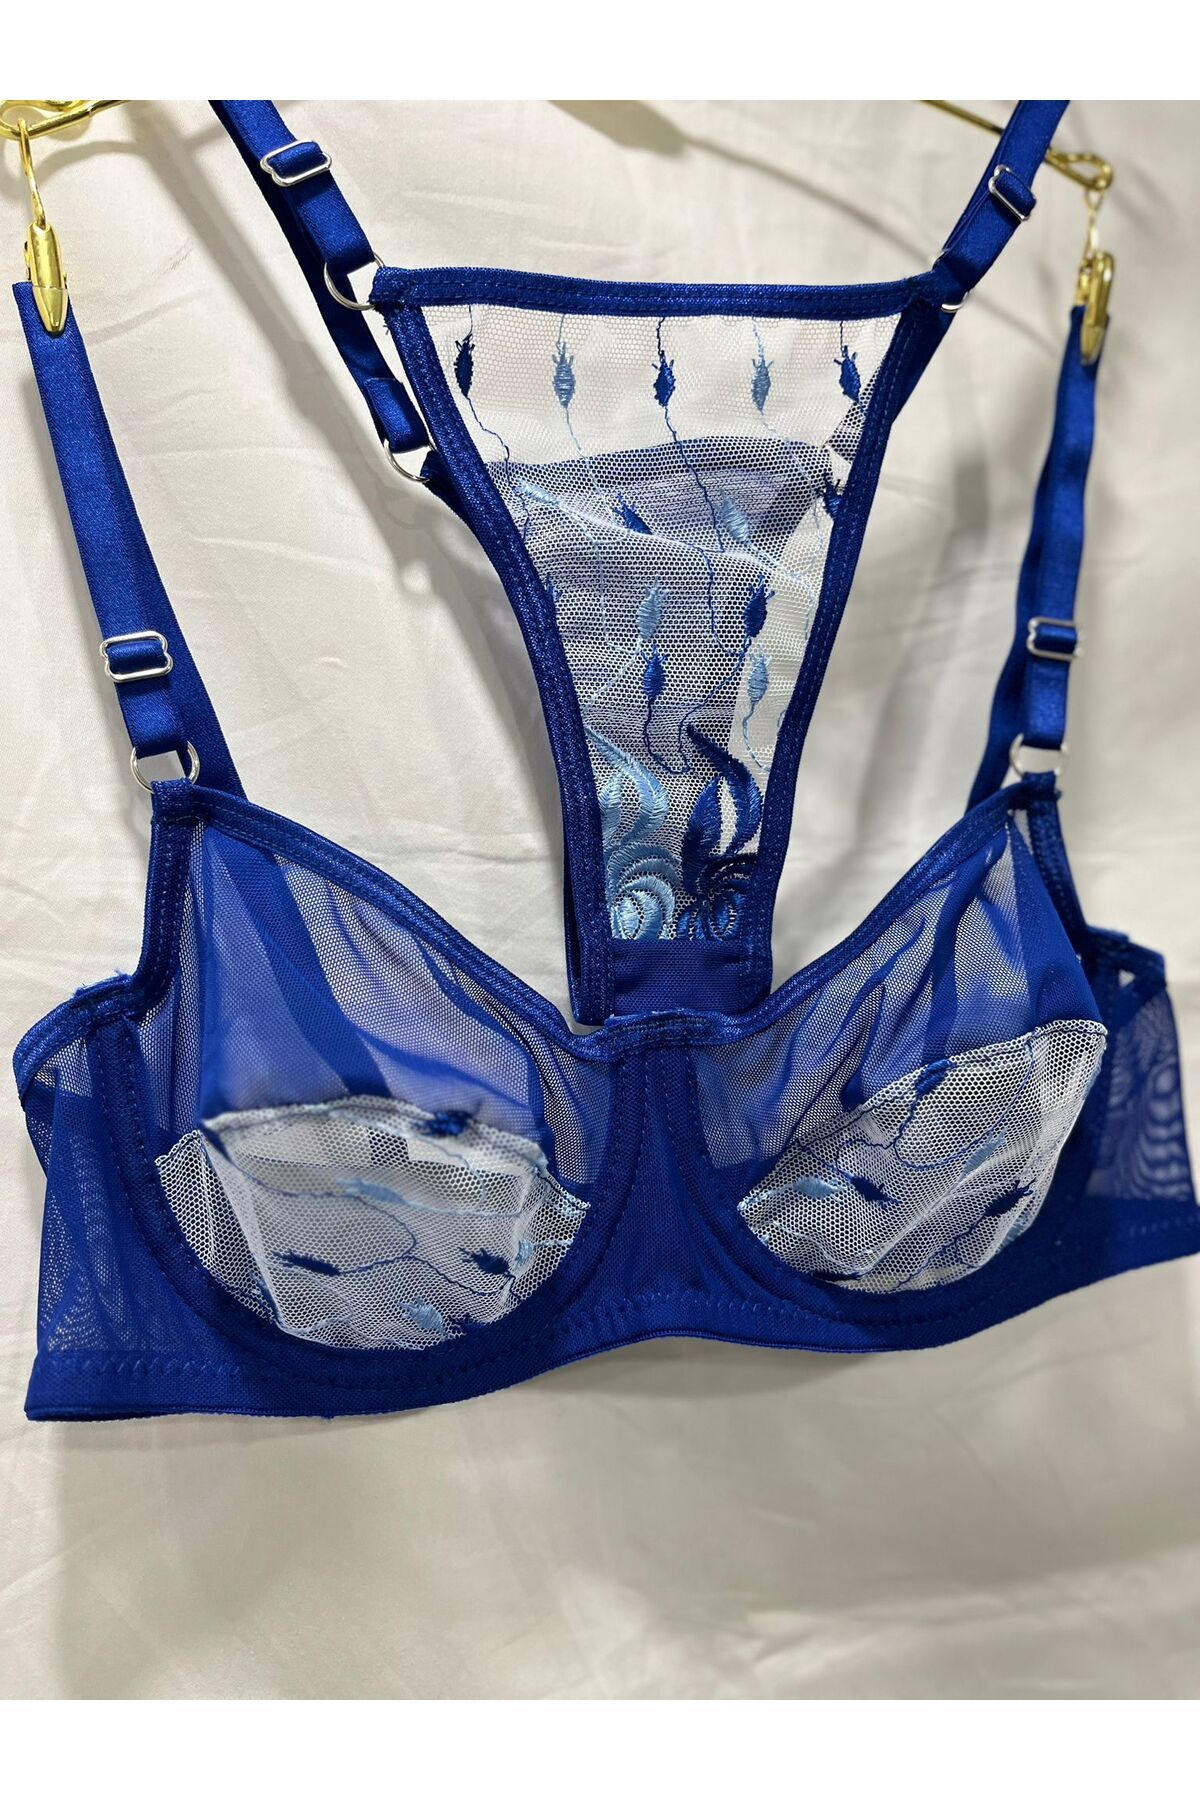 Masal Lingerie Women's Rubber Detailed Blue Cupless Bra Set - Trendyol